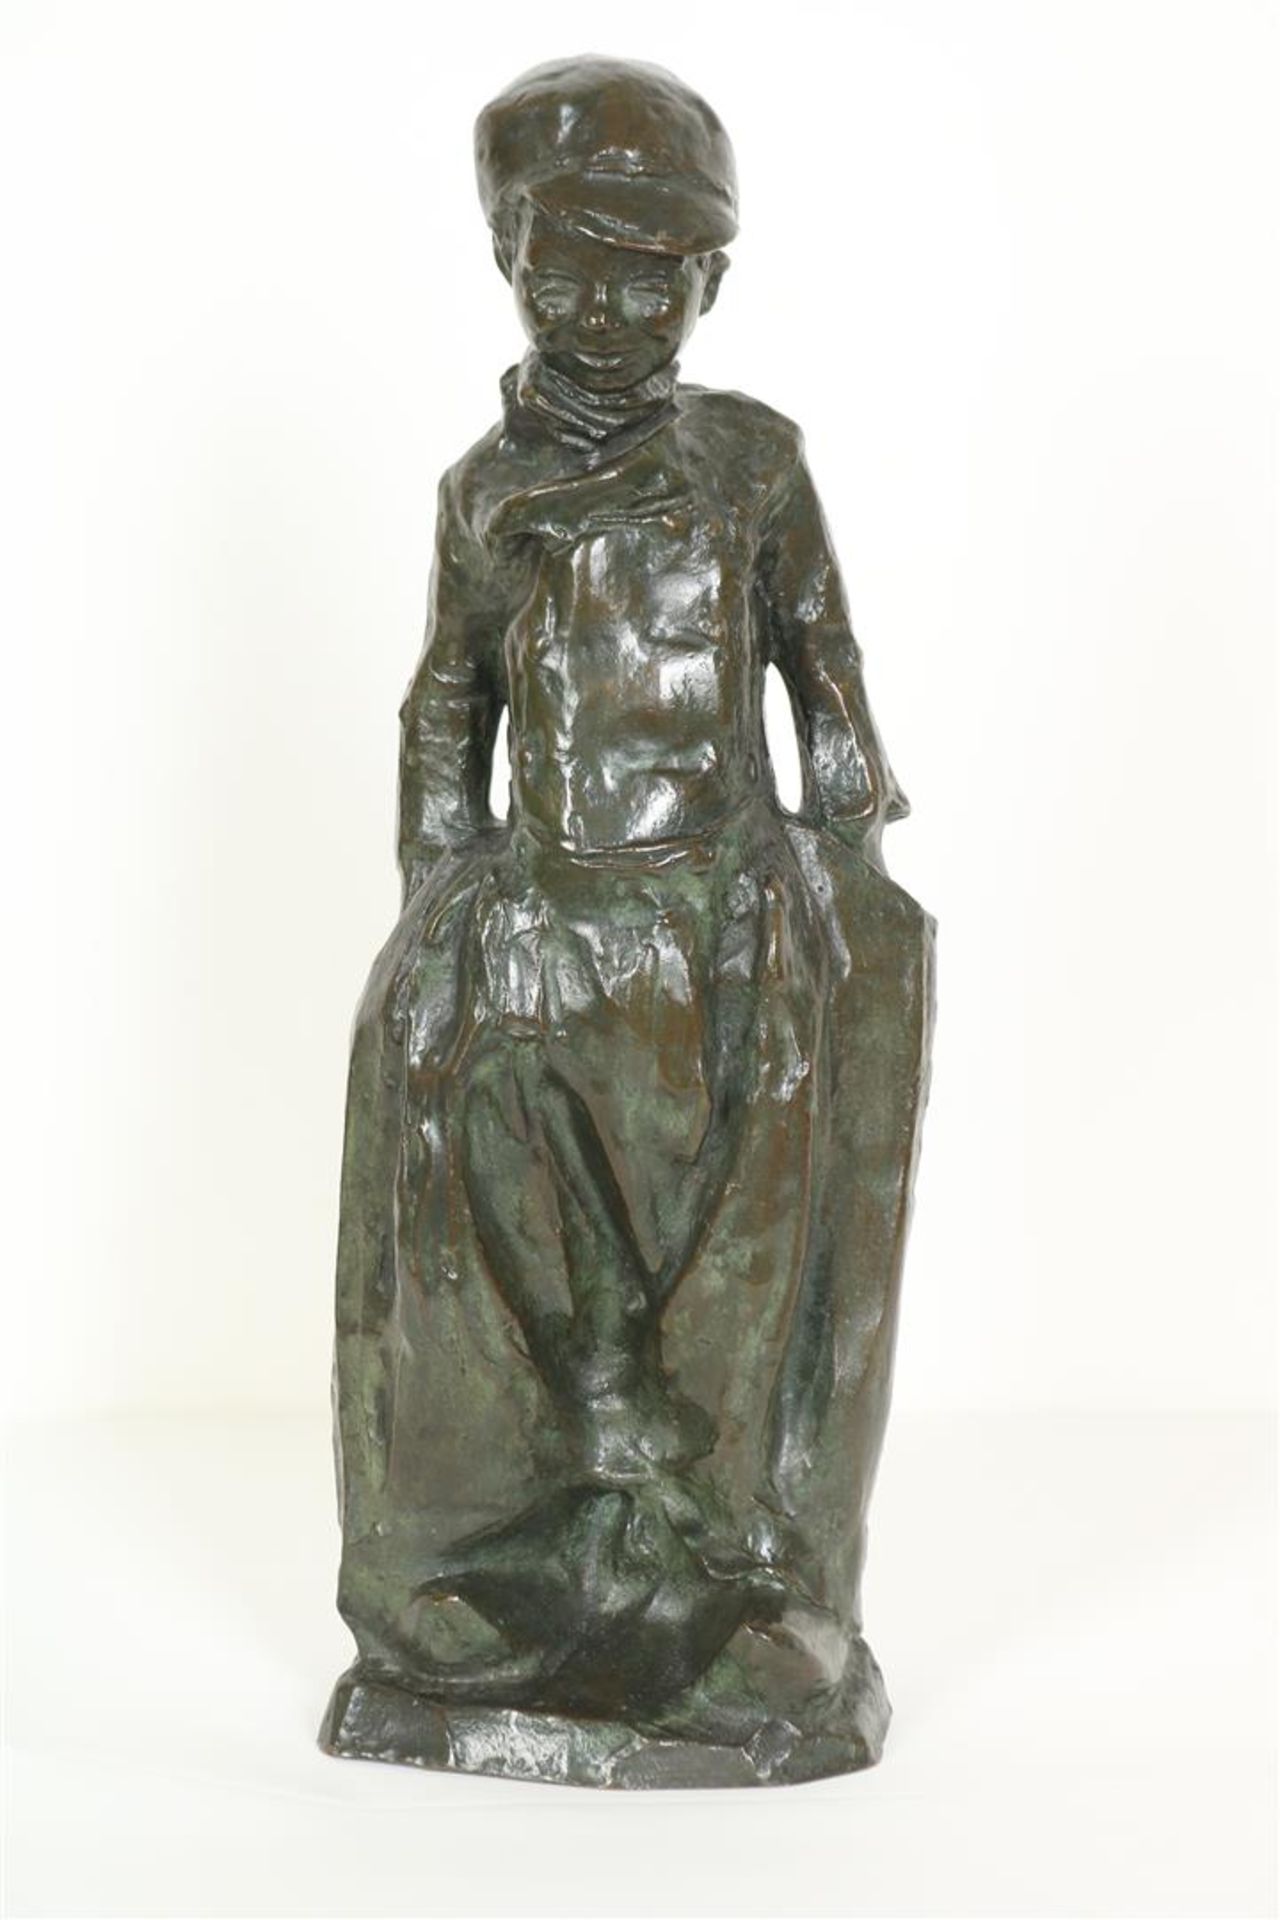 "Charles" Henri Marie van Wijk (1875-1917) Bronze figure of a Volendam fisher boy with his hands